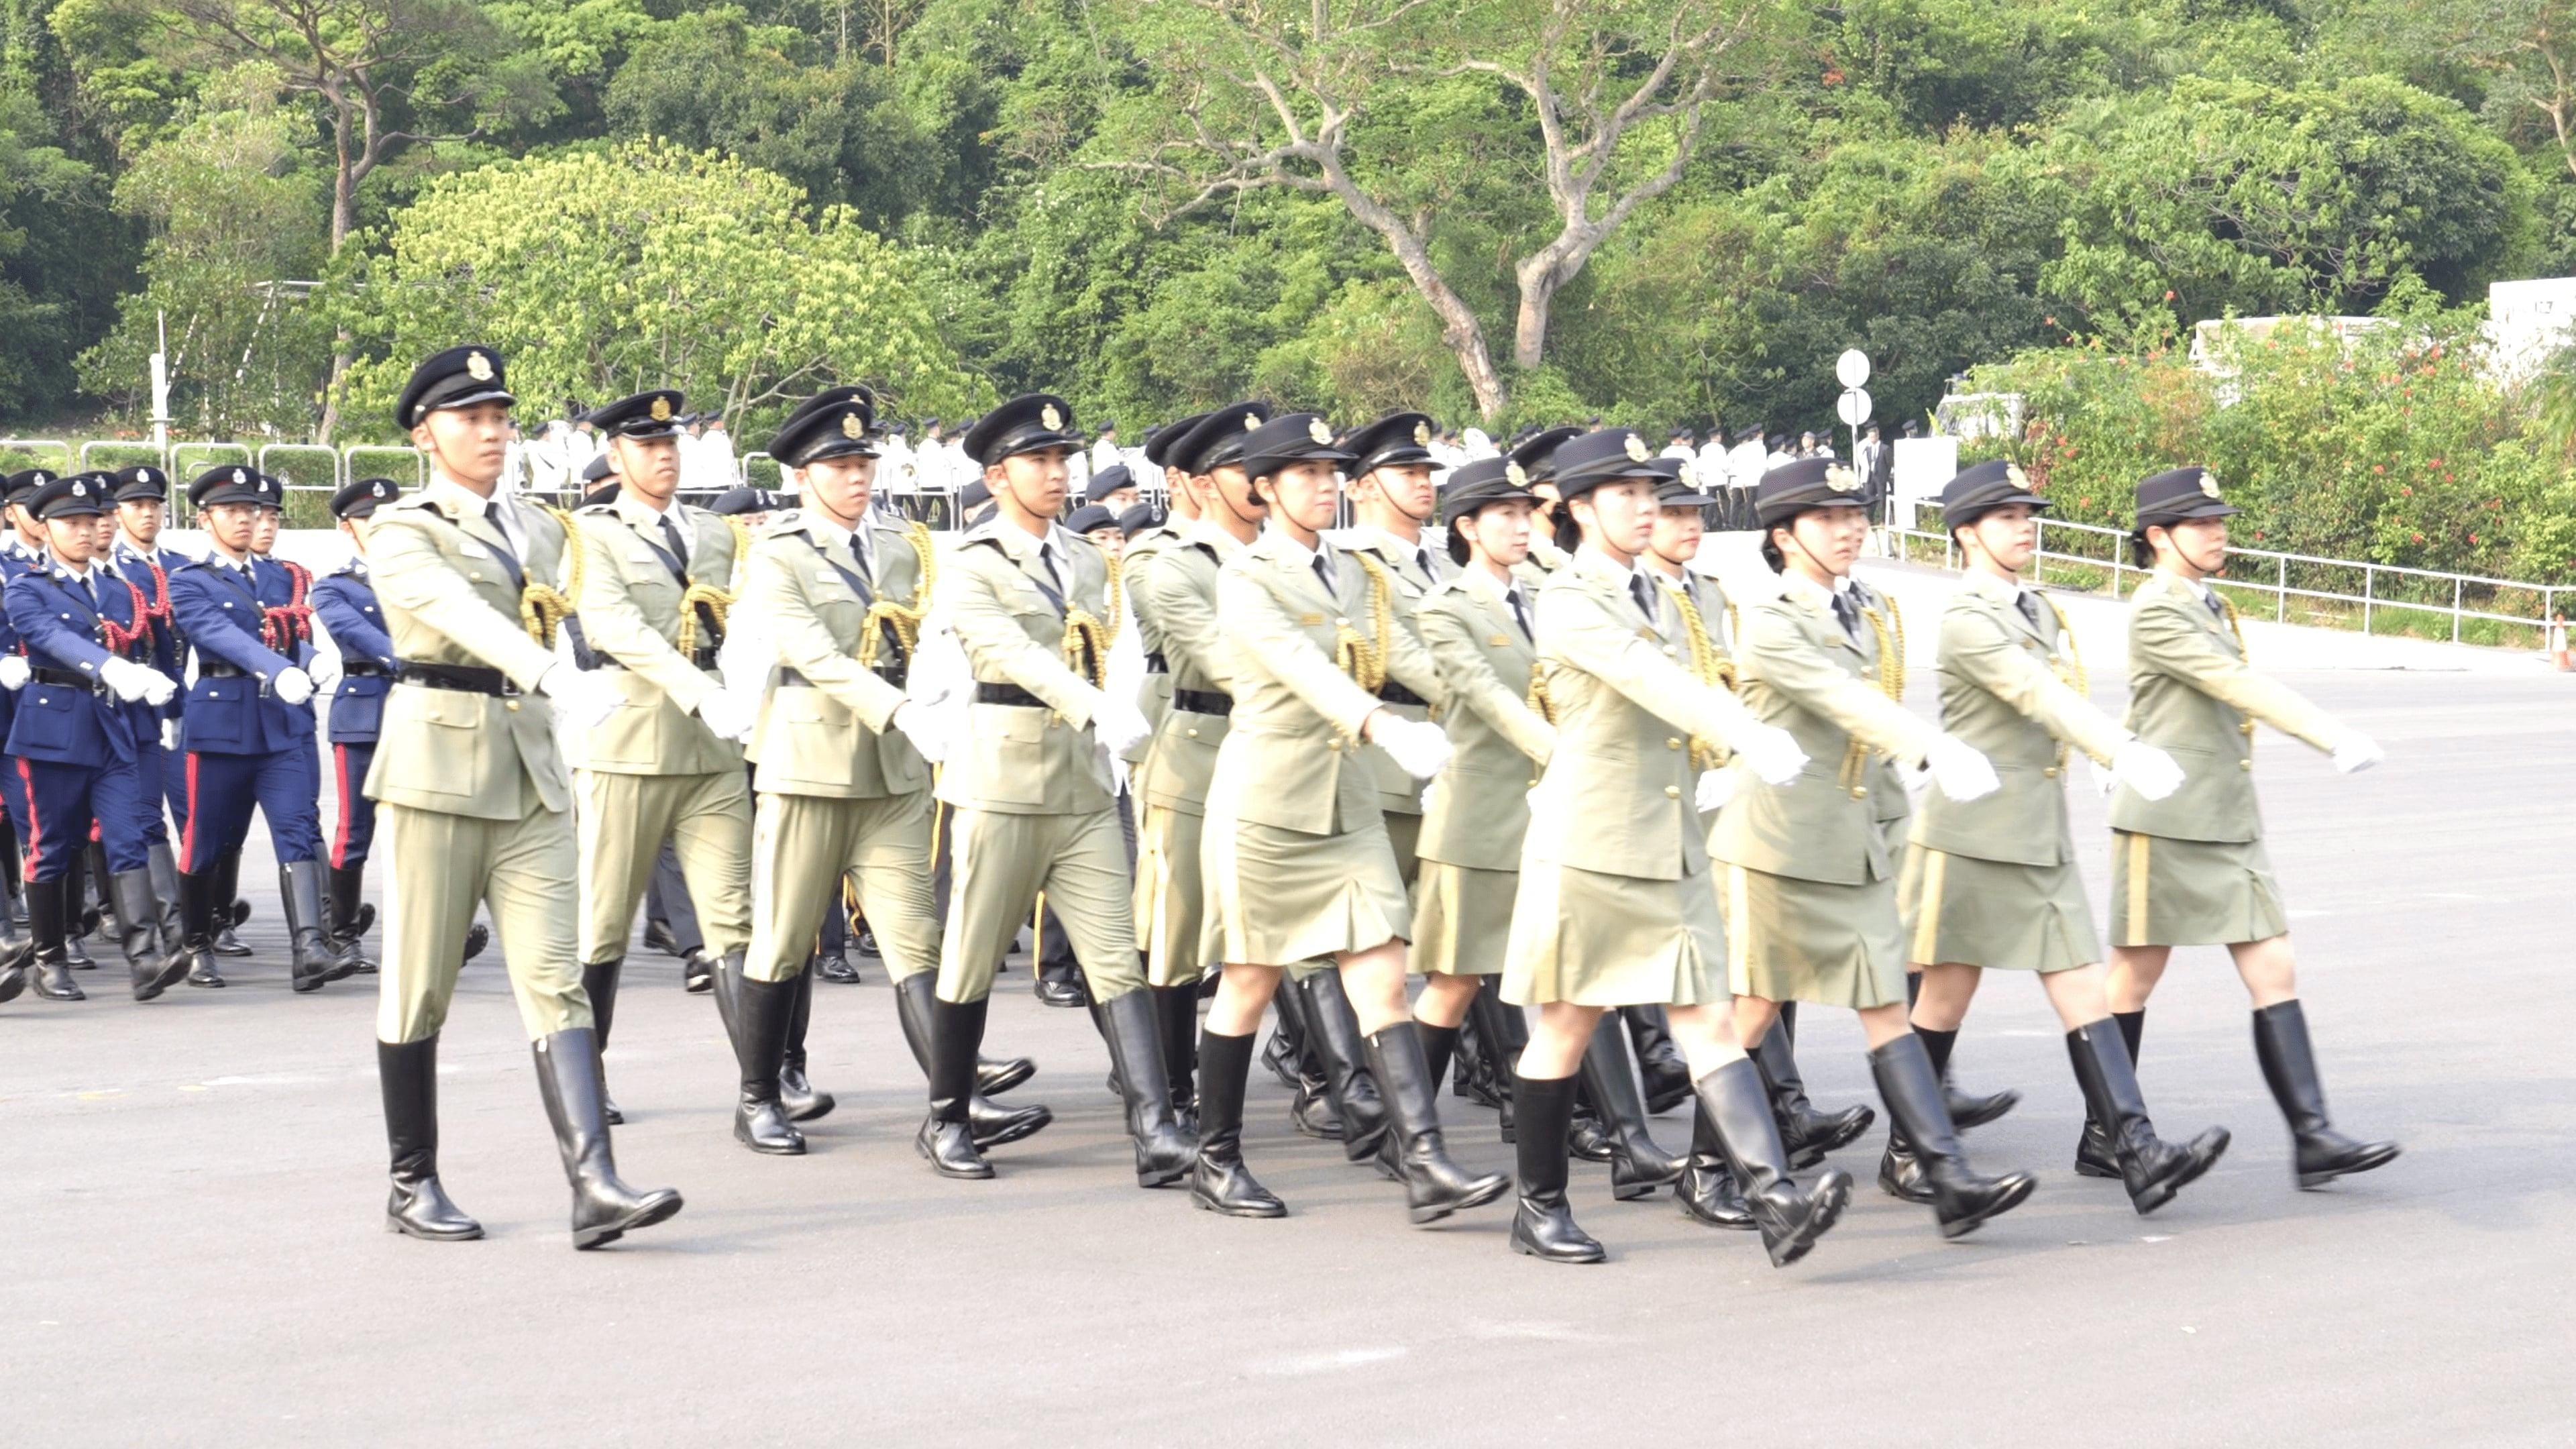 保安局及轄下紀律部隊今日（四月十五日）於香港警察學院聯合舉行「全民國家安全教育日」升旗儀式。圖示紀律部隊儀仗隊步操進場。